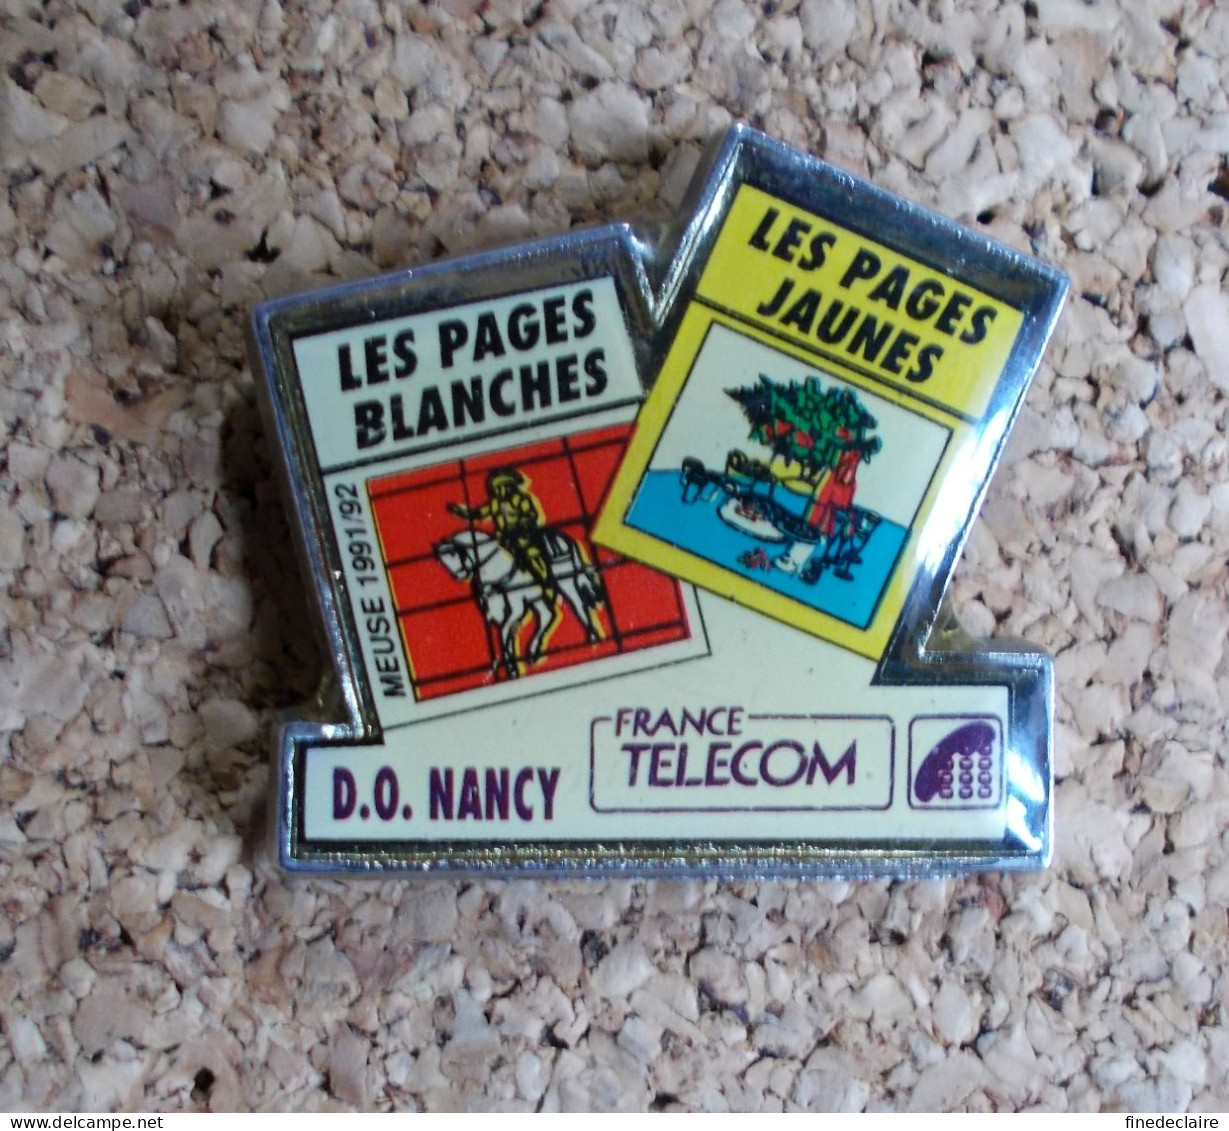 Pin's - France Télécom - D.O. Nancy Les Pages Blanches, Les Pages Jaunes - Meuse 1991/92 - France Telecom